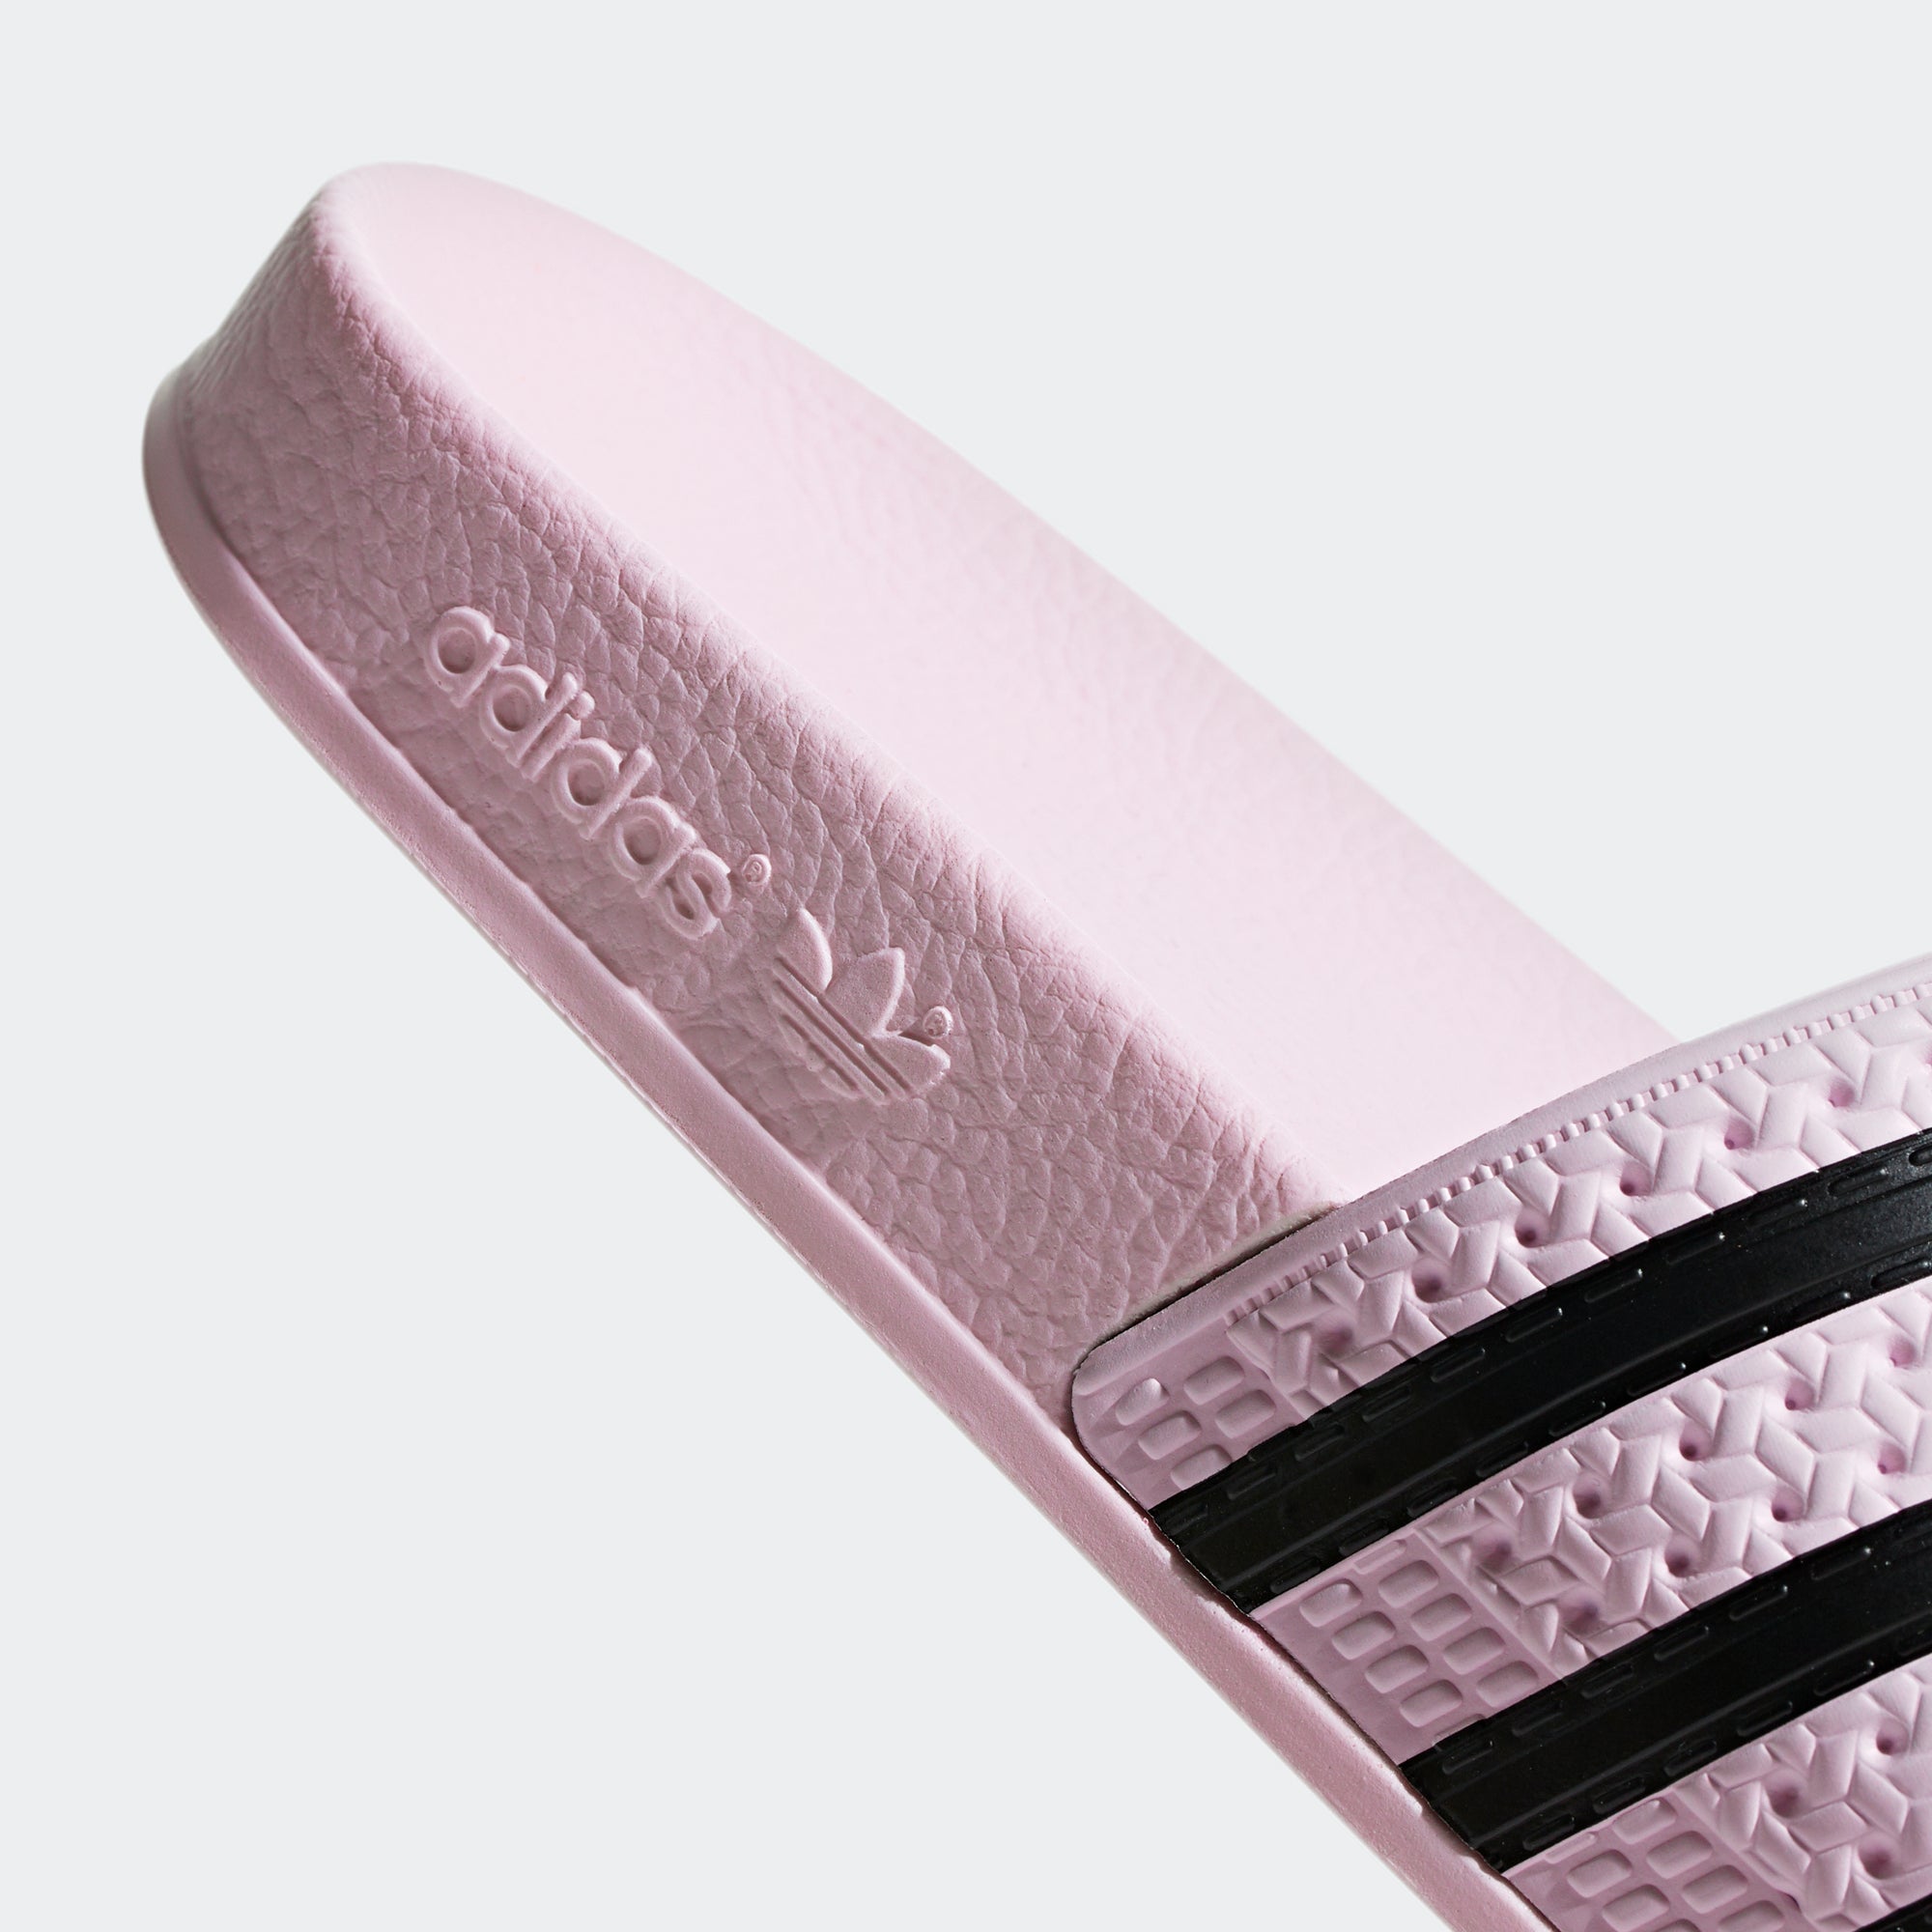 adidas adilette clear pink